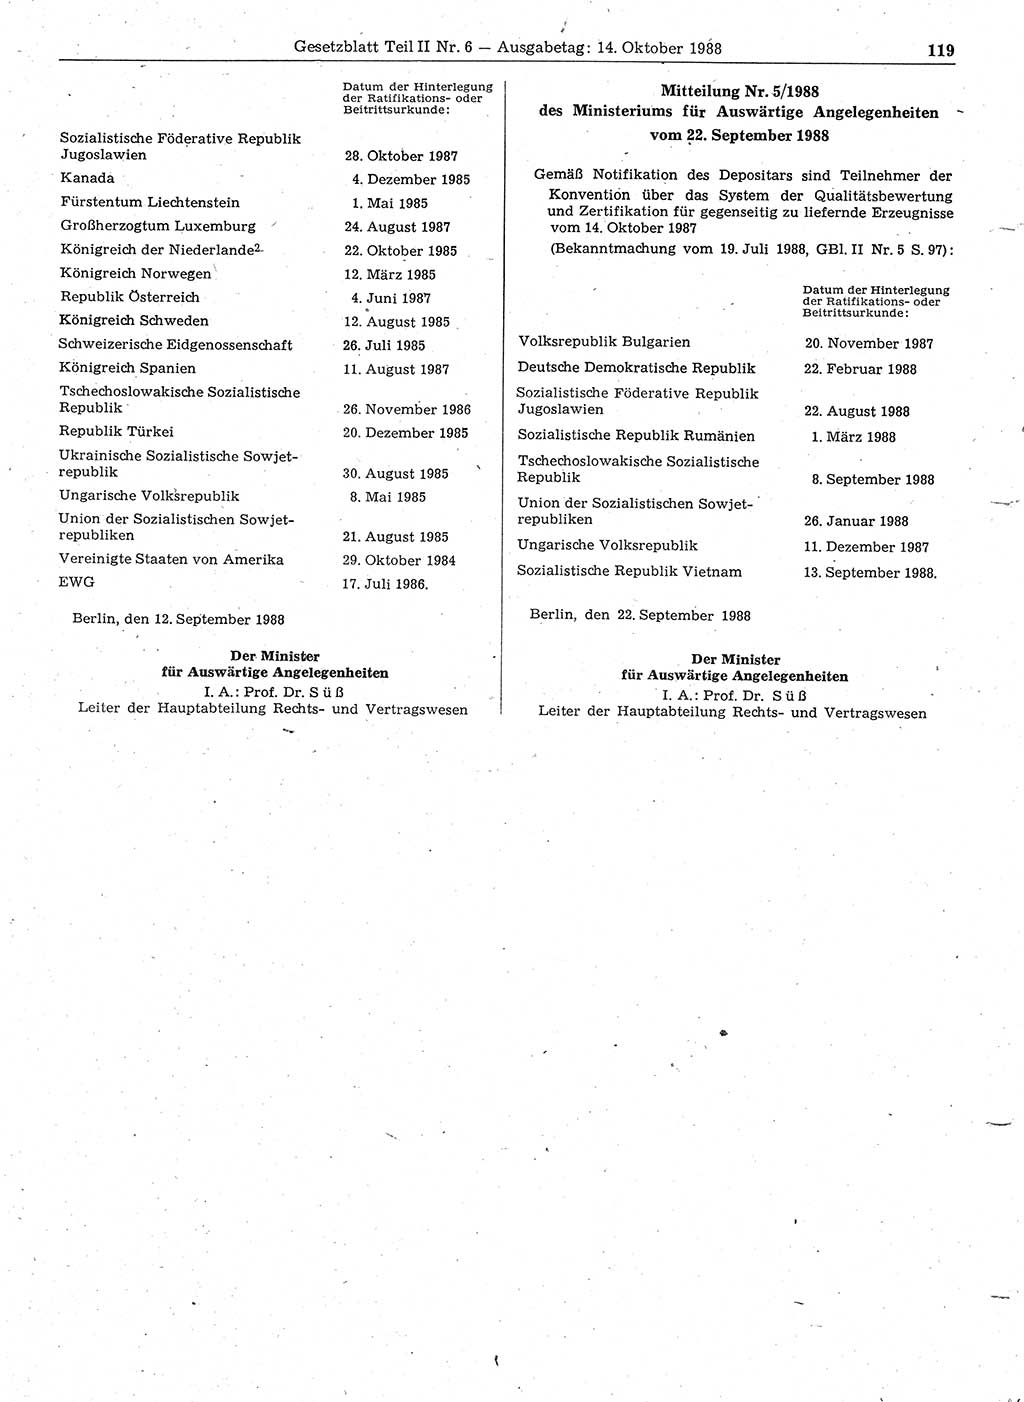 Gesetzblatt (GBl.) der Deutschen Demokratischen Republik (DDR) Teil ⅠⅠ 1988, Seite 119 (GBl. DDR ⅠⅠ 1988, S. 119)